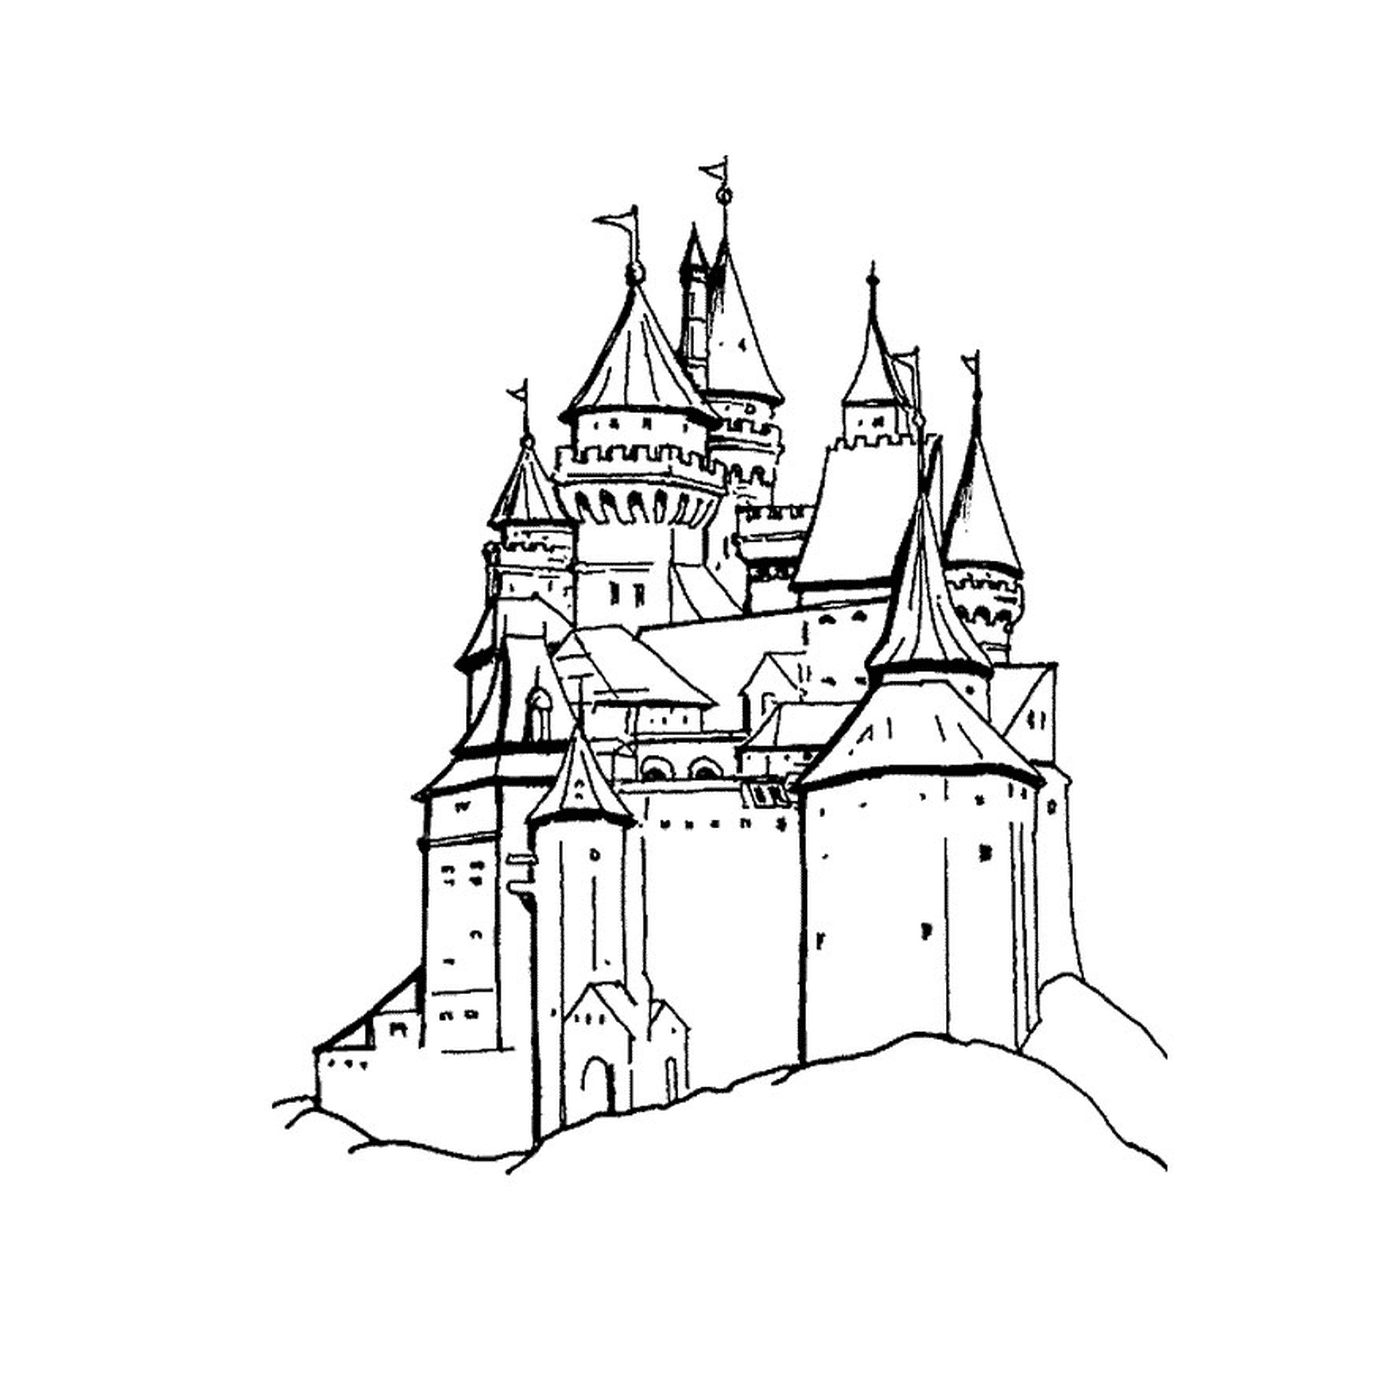   Un château perché sur une colline 